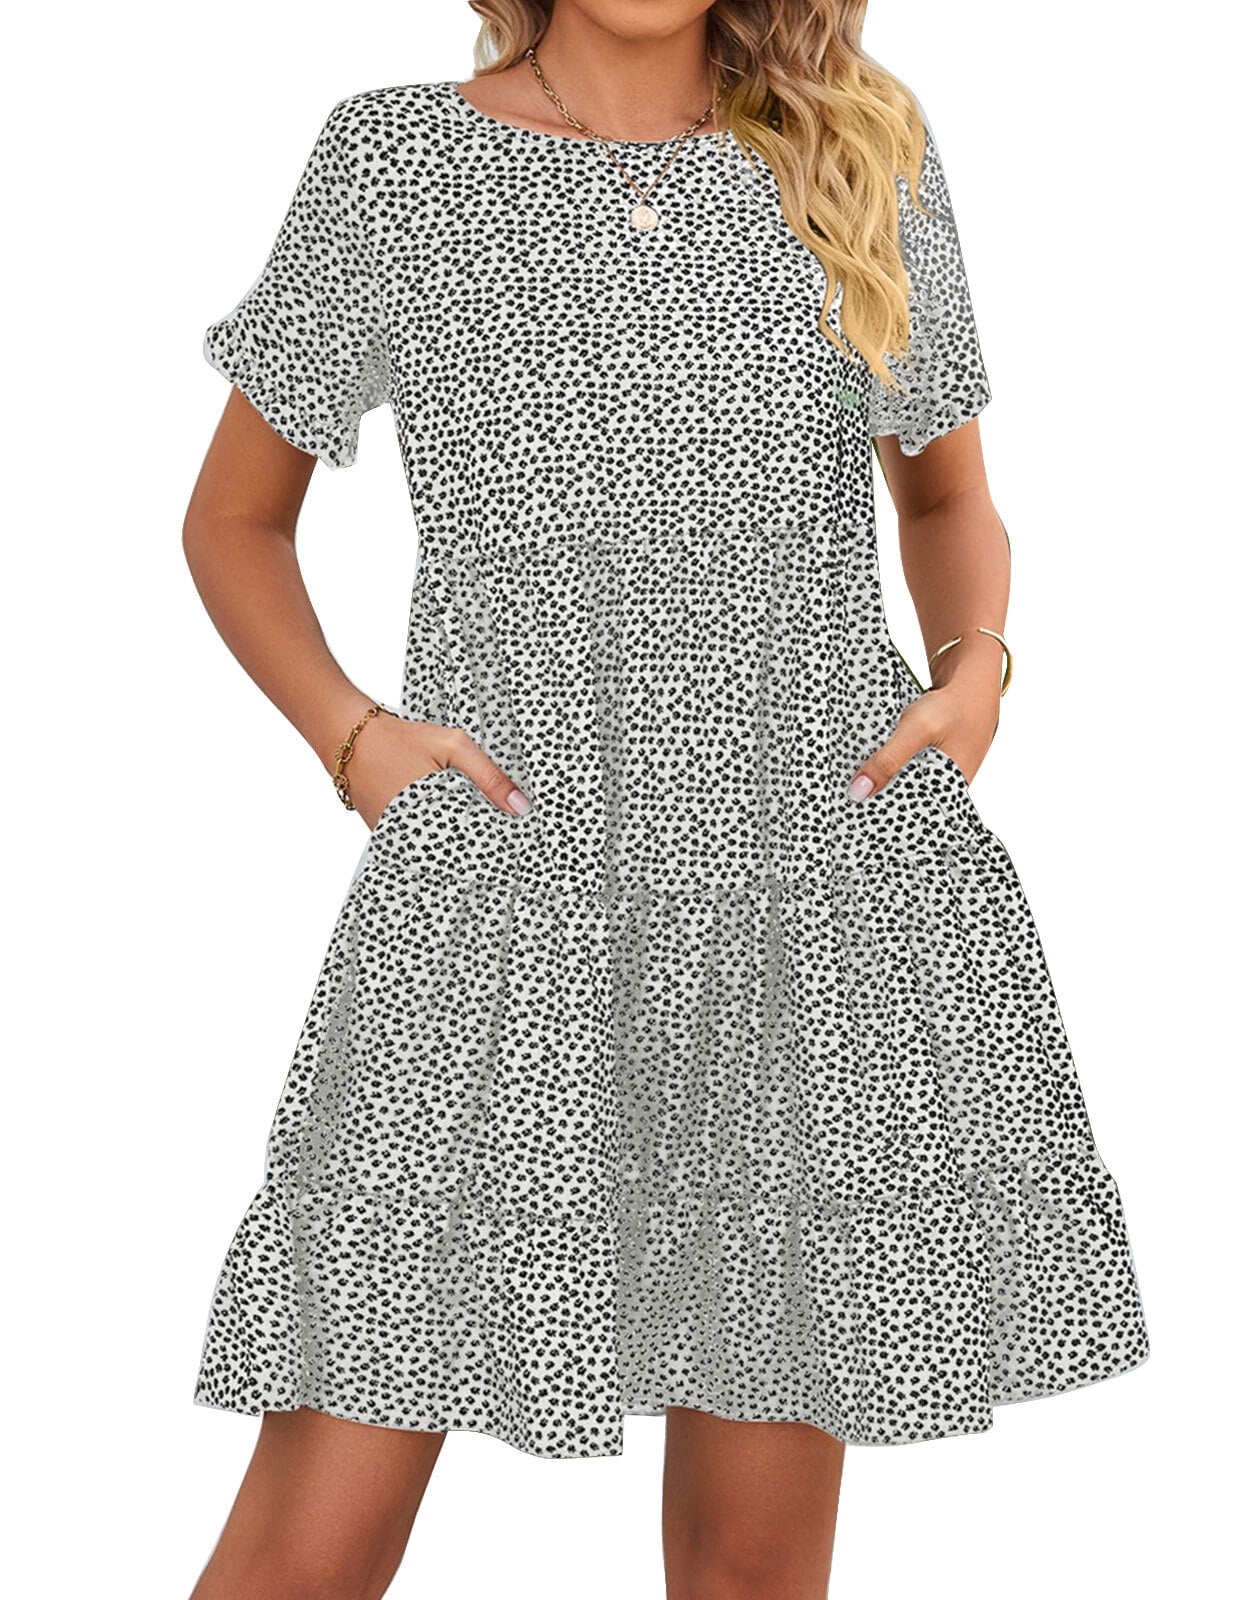 Summer Dress for Women Ruffled Short Sleeve Polka Dot Print Sundresses ...